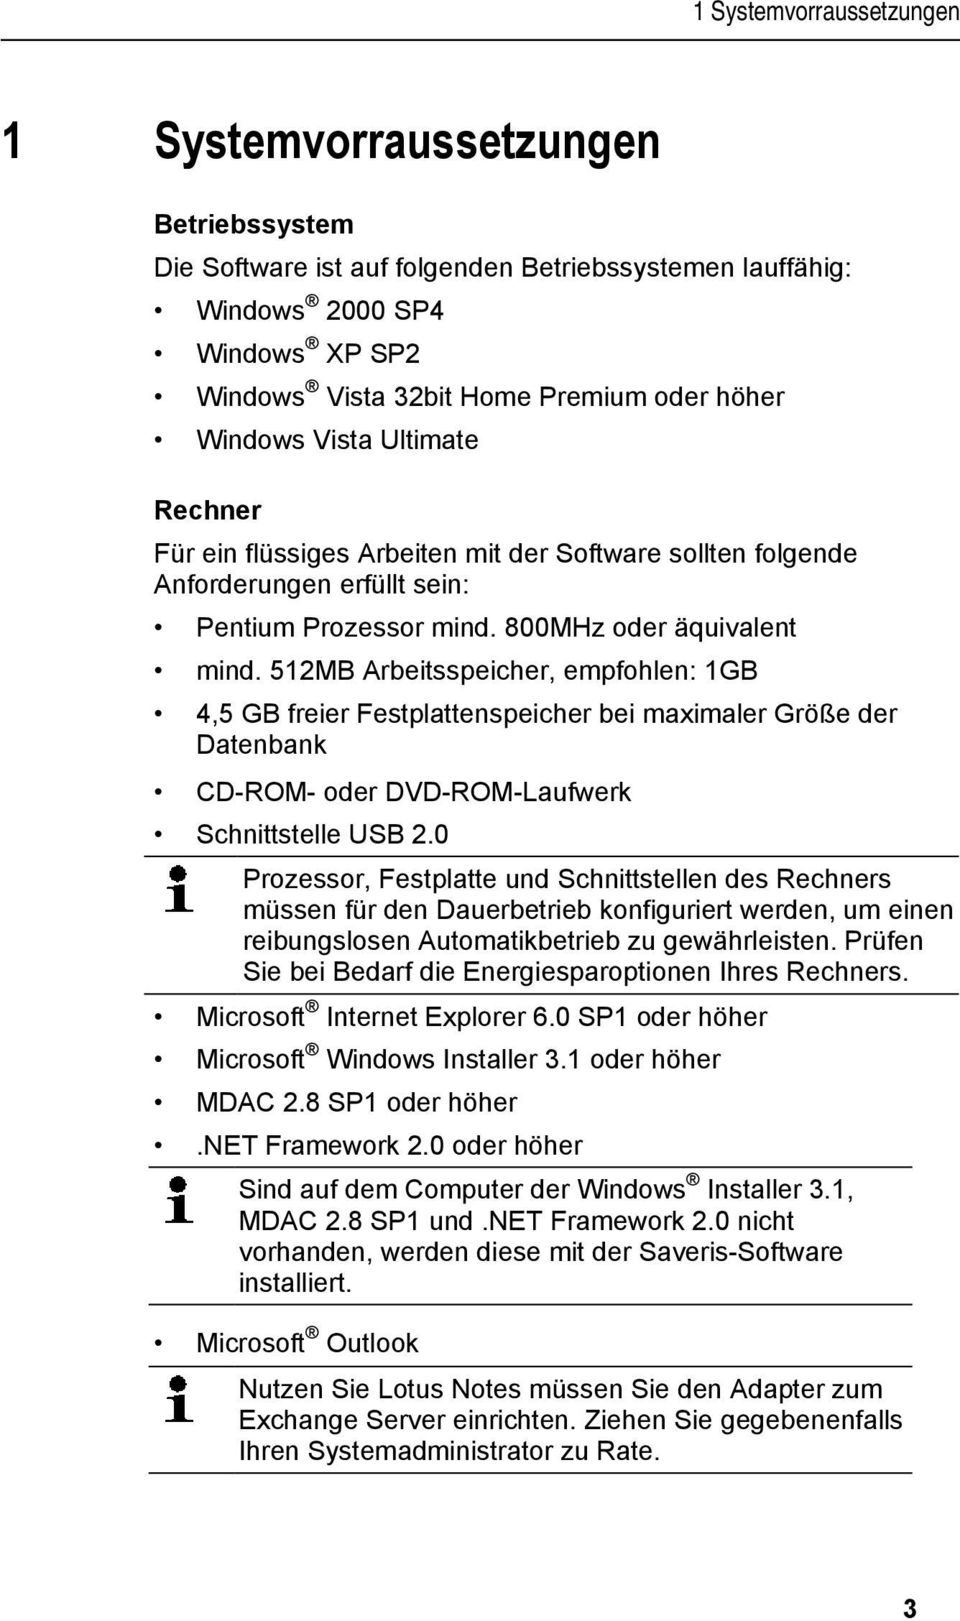 doc @ 5432 1 Systemvorraussetzungen 1 Systemvorraussetzungen Betriebssystem Die Software ist auf folgenden Betriebssystemen lauffähig: Windows 2000 SP4 Windows XP SP2 Windows Vista 32bit Home Premium